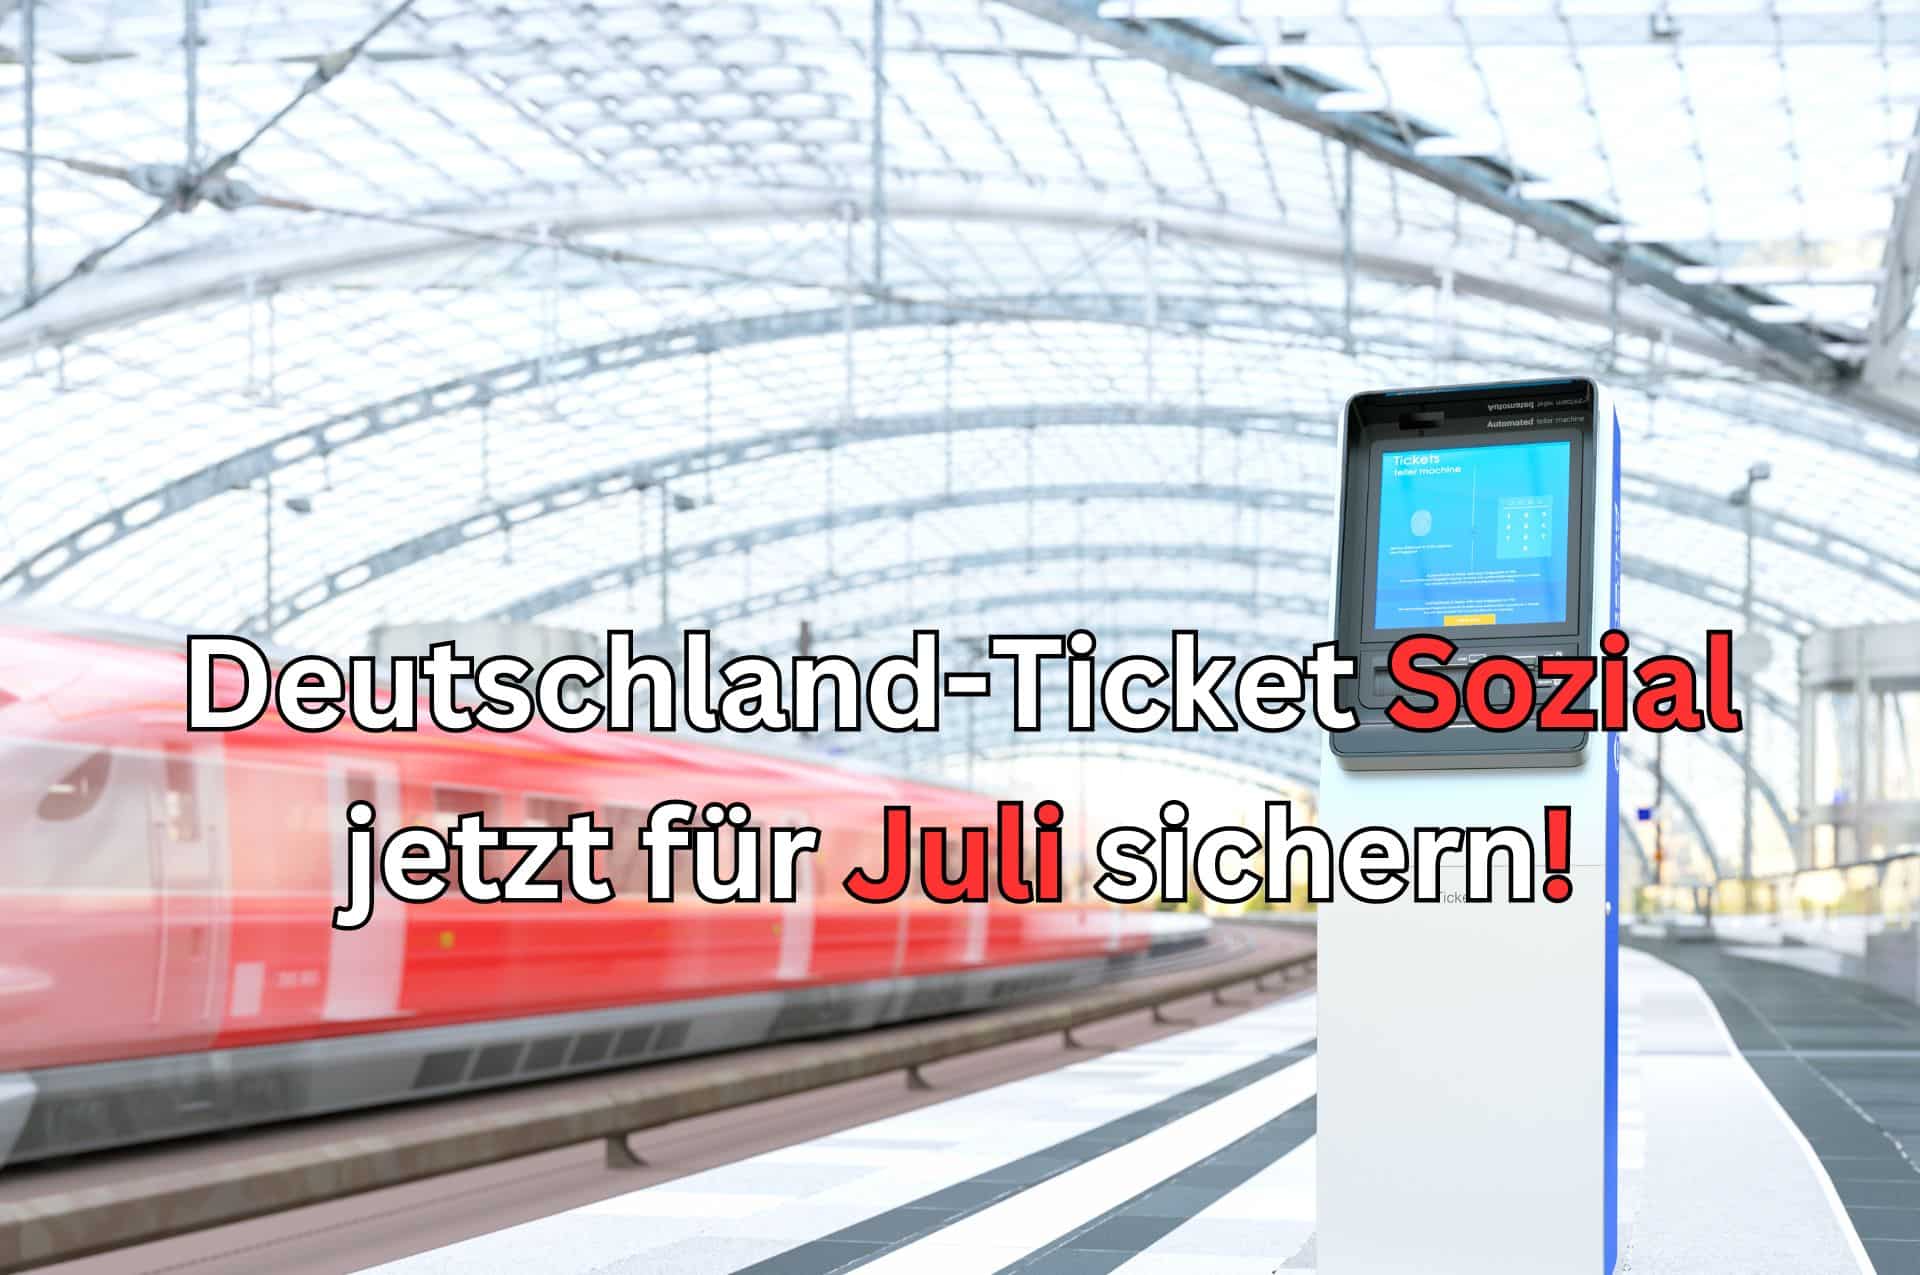 Deutschland Ticket Sozial für 39 Euro wo erwerben?